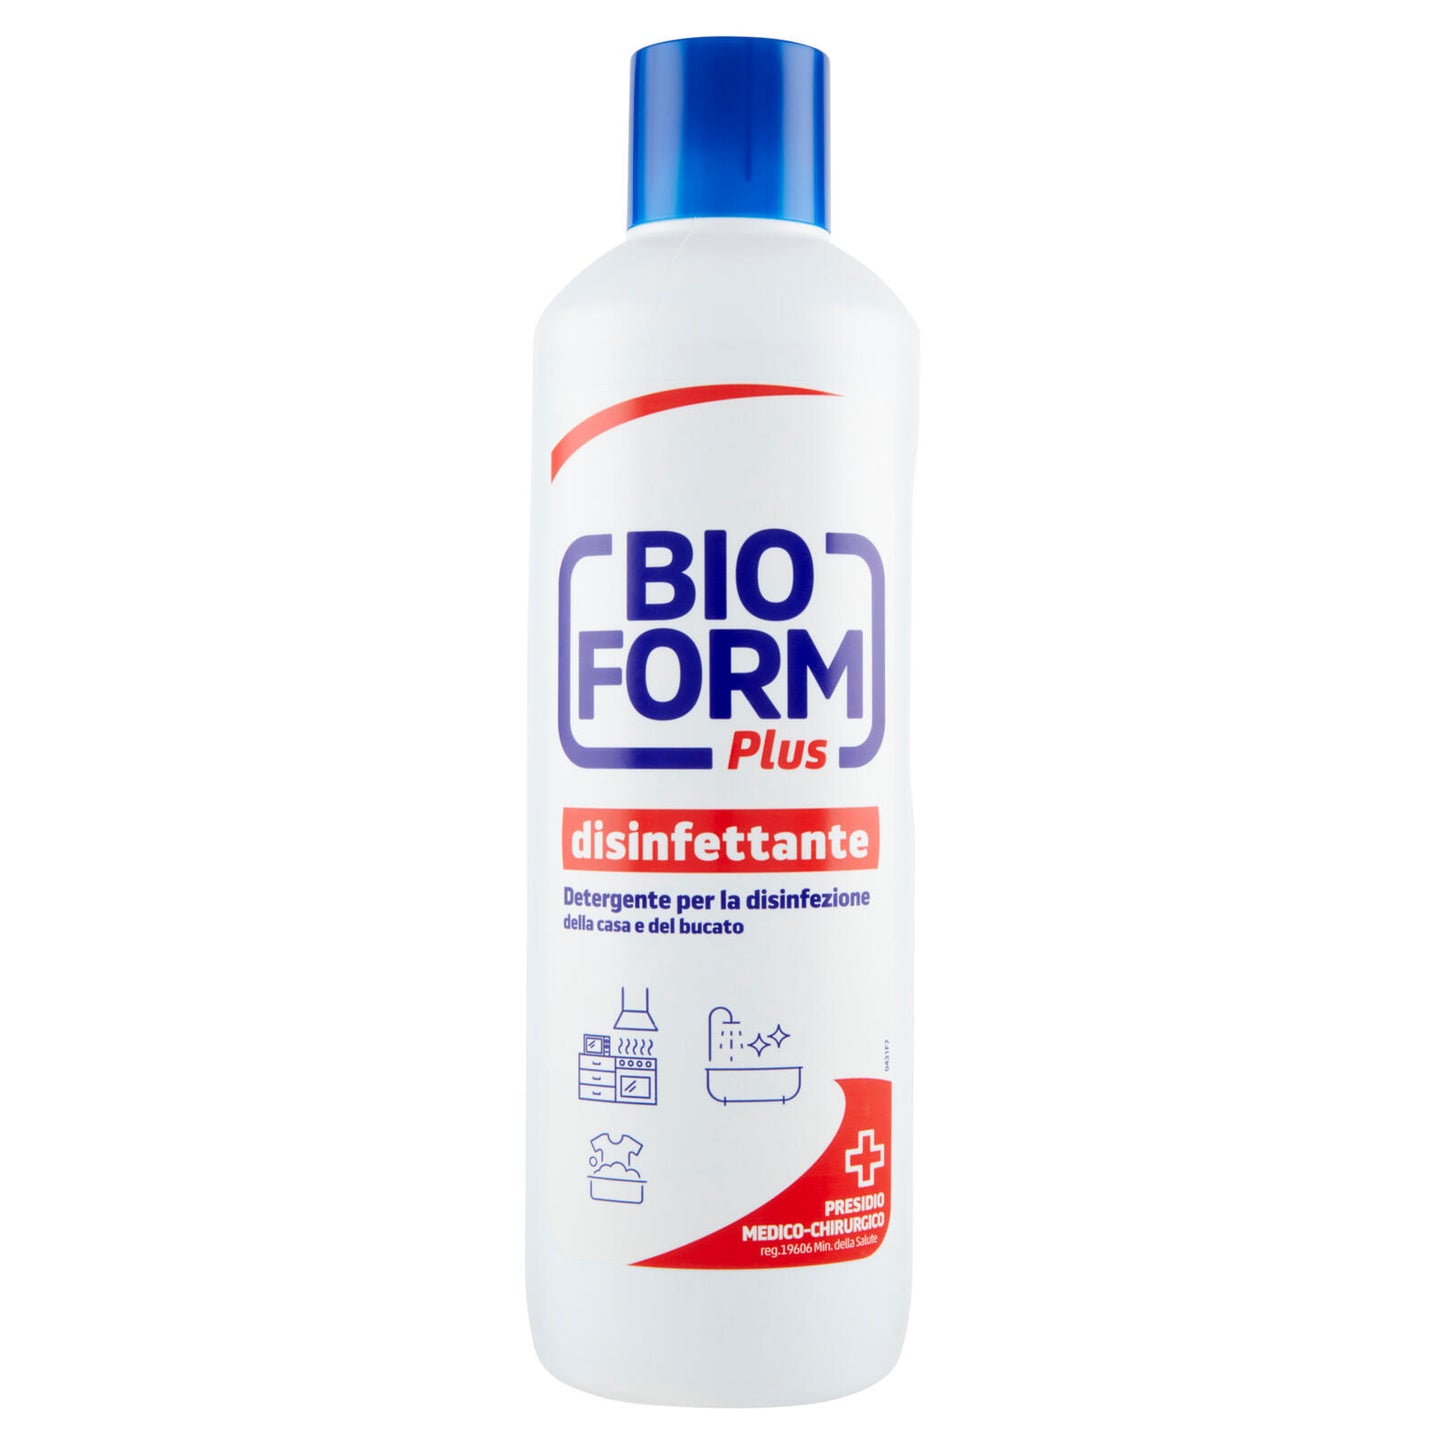 Bioform Plus disinfettante Detergente per la disinfezione della casa e del bucato 1 L